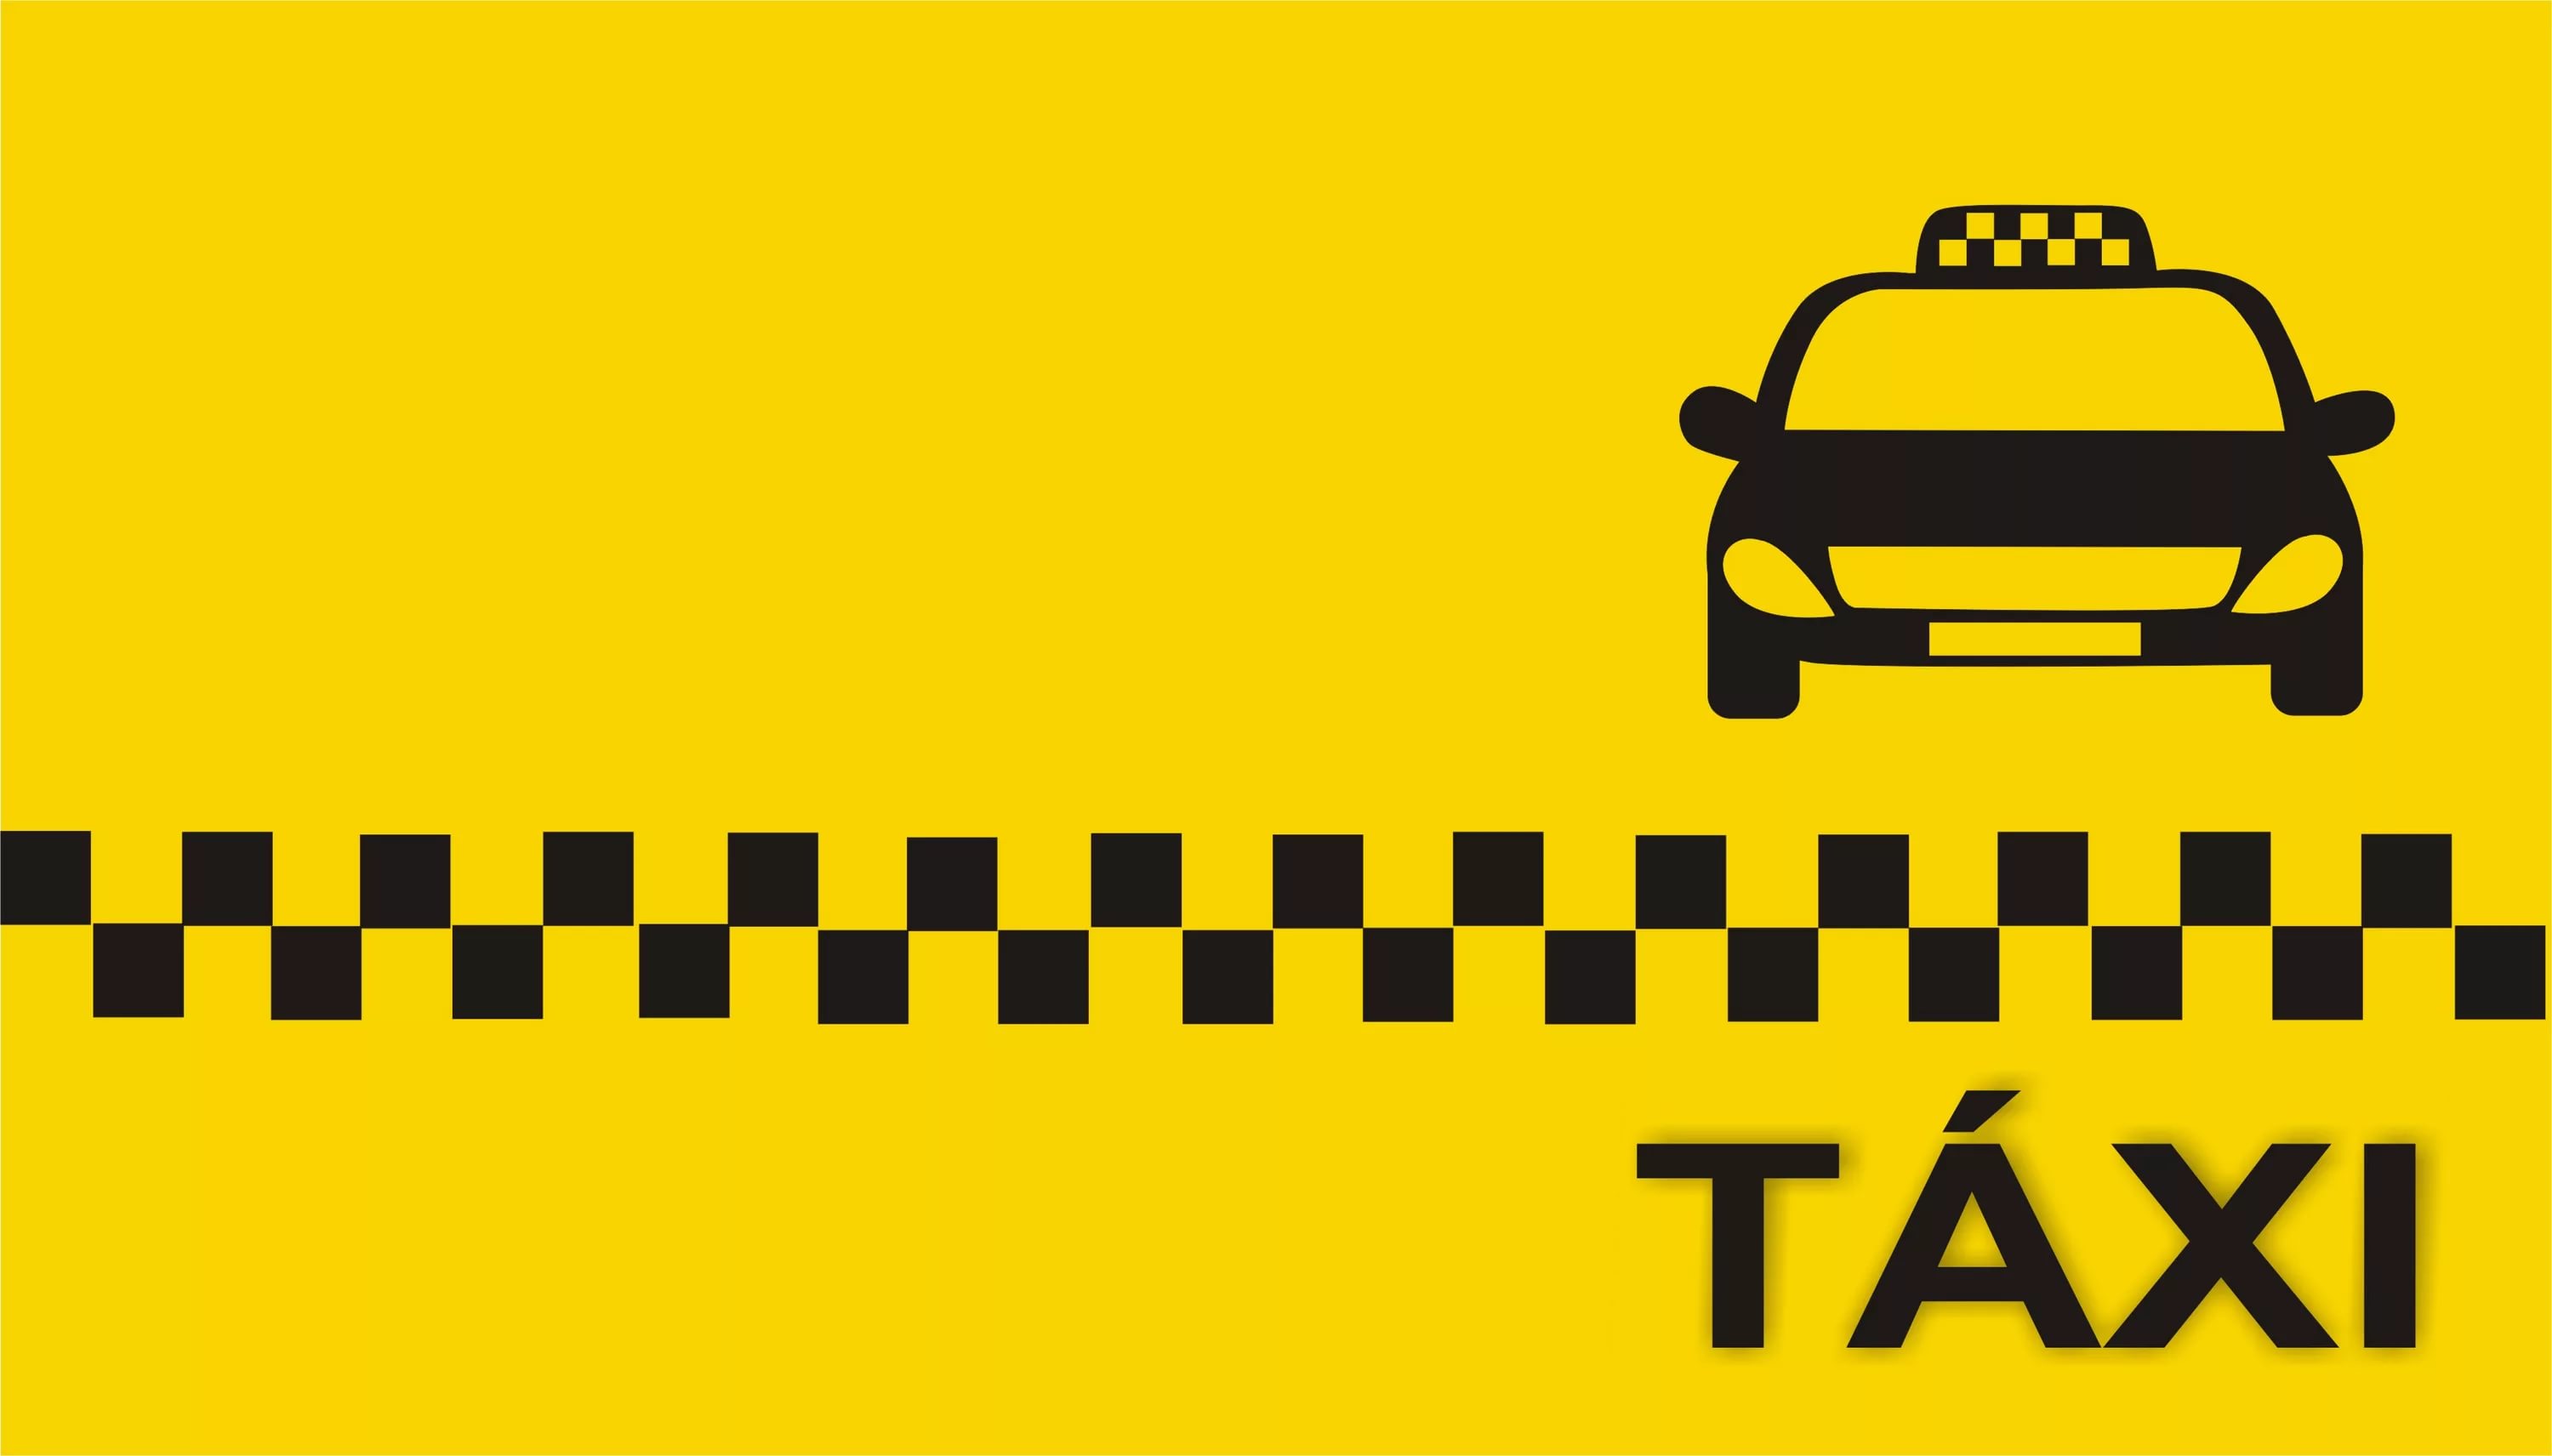 Taxi Wallpaper Hq - Taxi Car Visiting Card , HD Wallpaper & Backgrounds